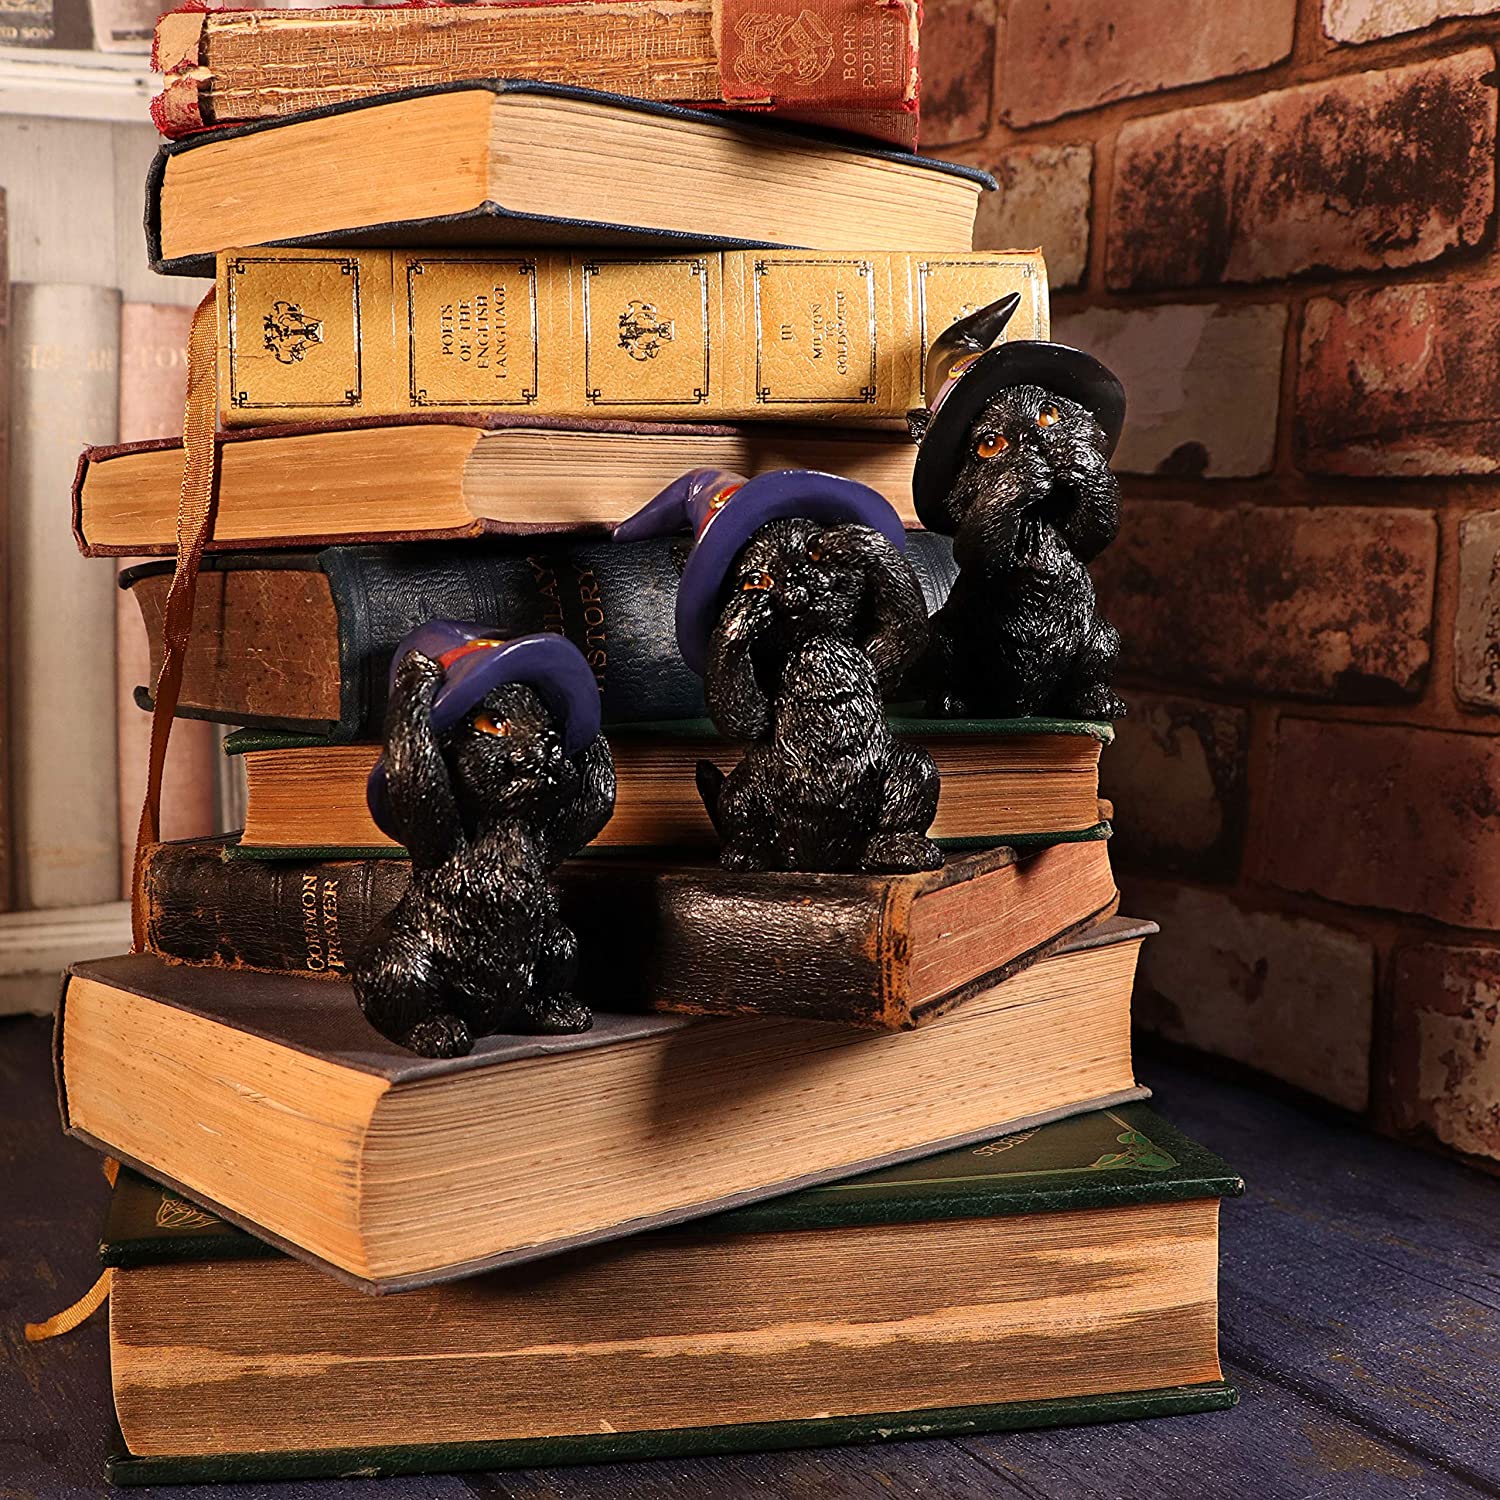 使い魔の賢い、3匹の黒猫（クロネコ）「見ざる聞かざる言わざる」三猿